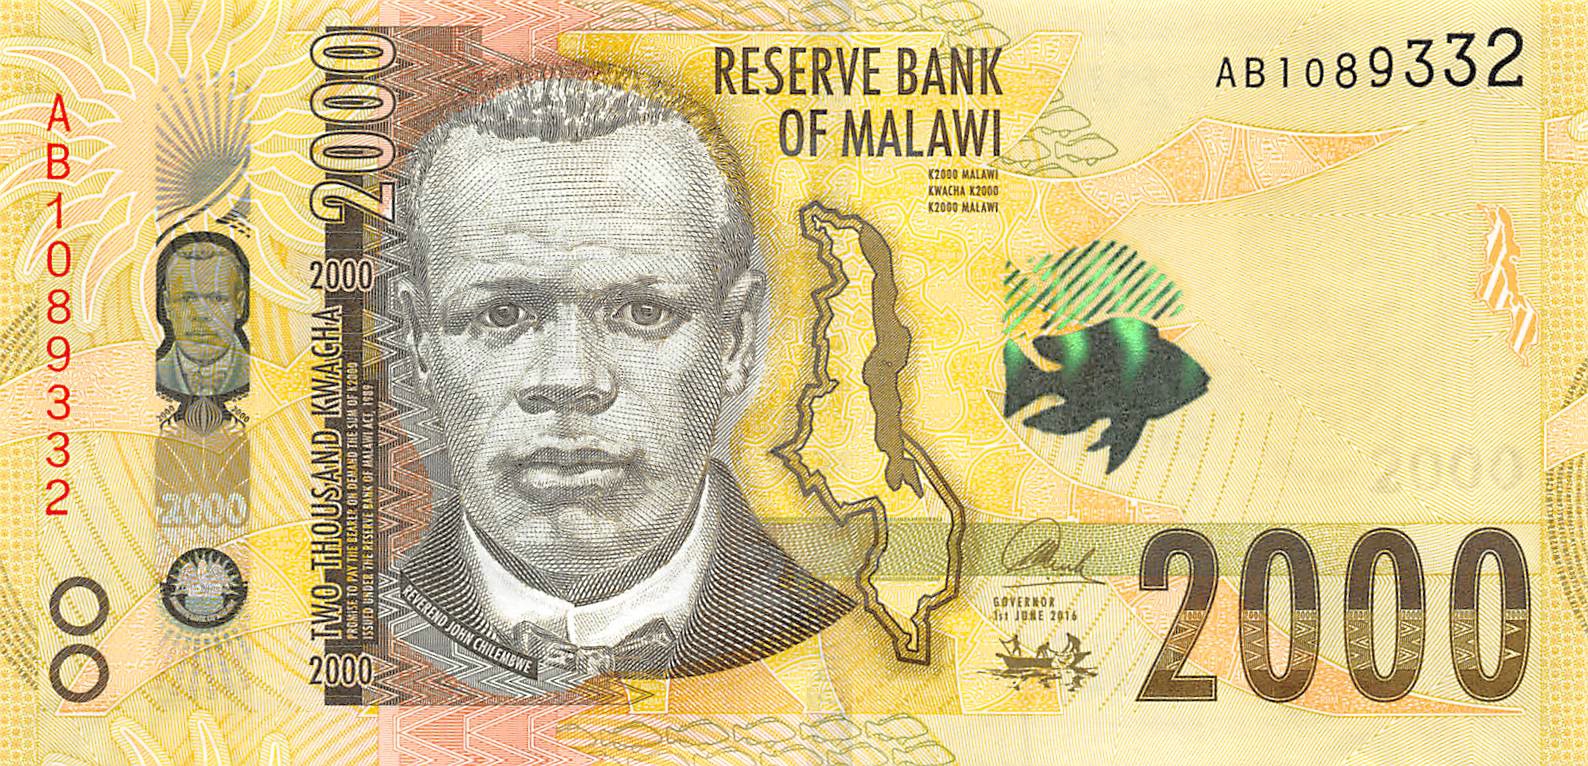 MALAWI 5 KWACHA 1990 P 24 UNC